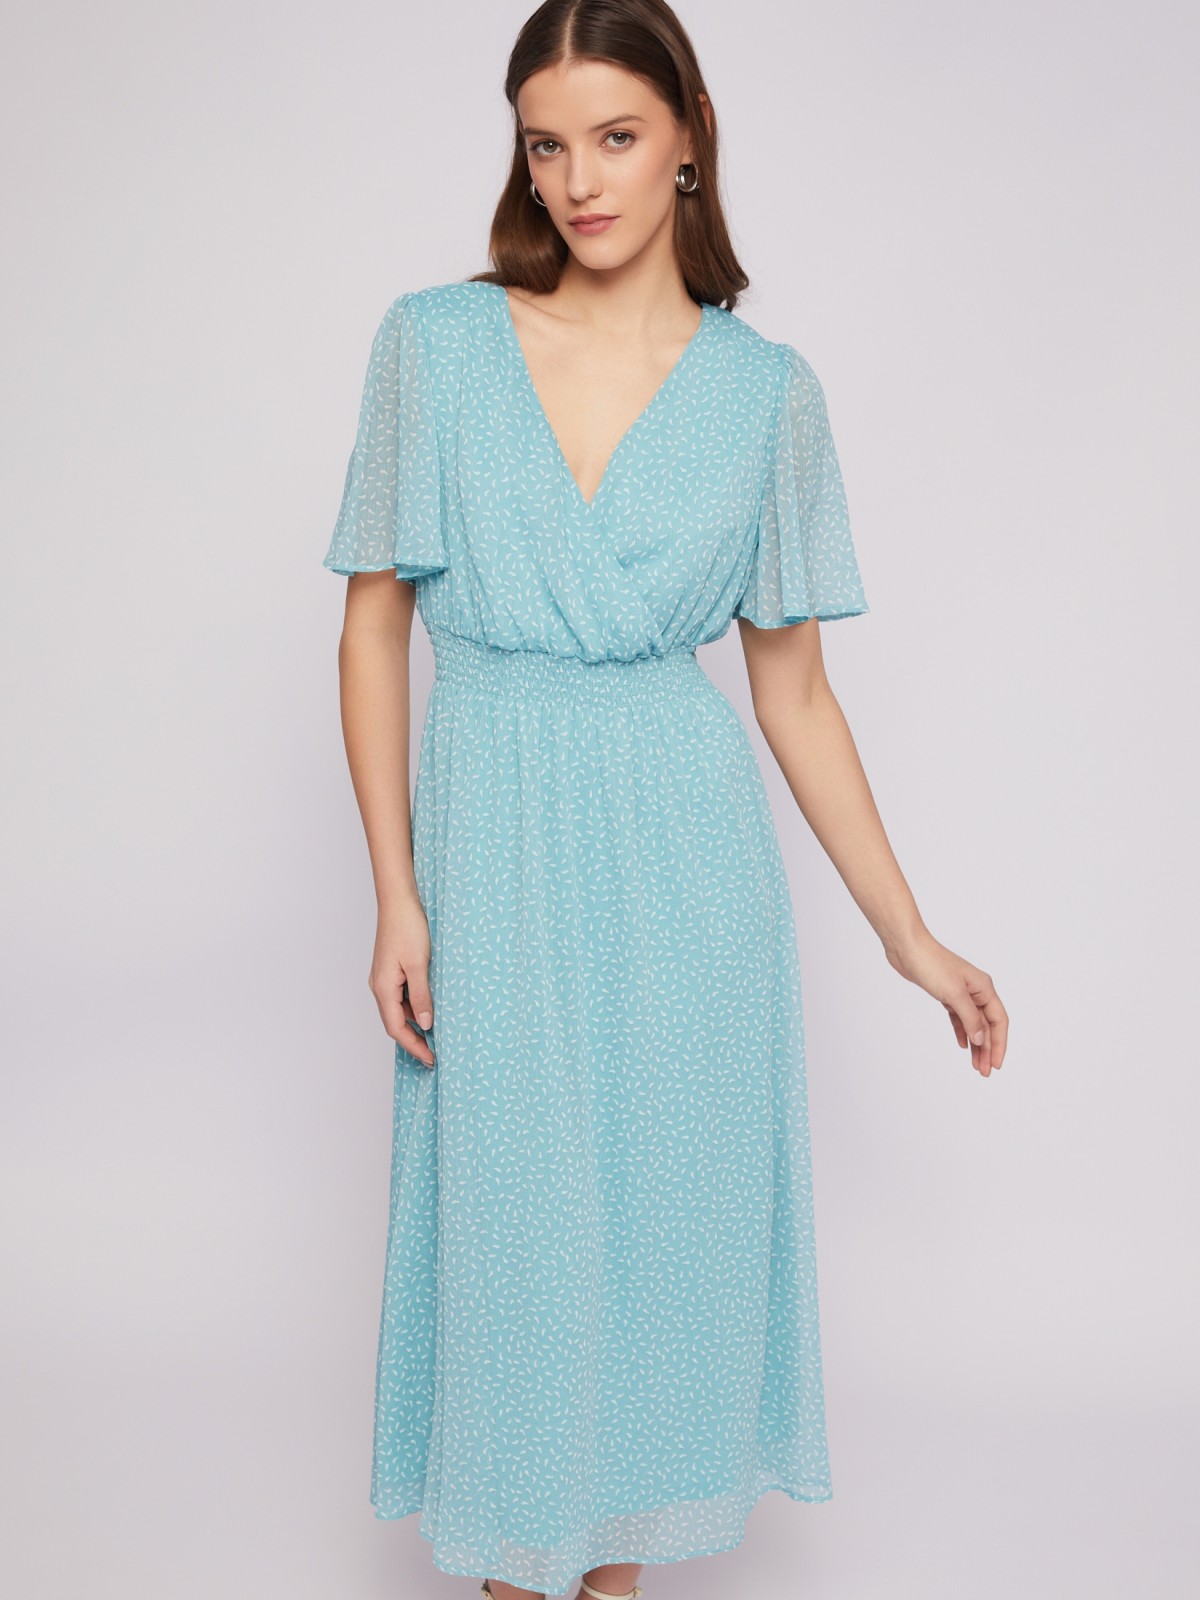 Шифоновое платье миди на резинке с принтом zolla 024218262303, цвет мятный, размер XL